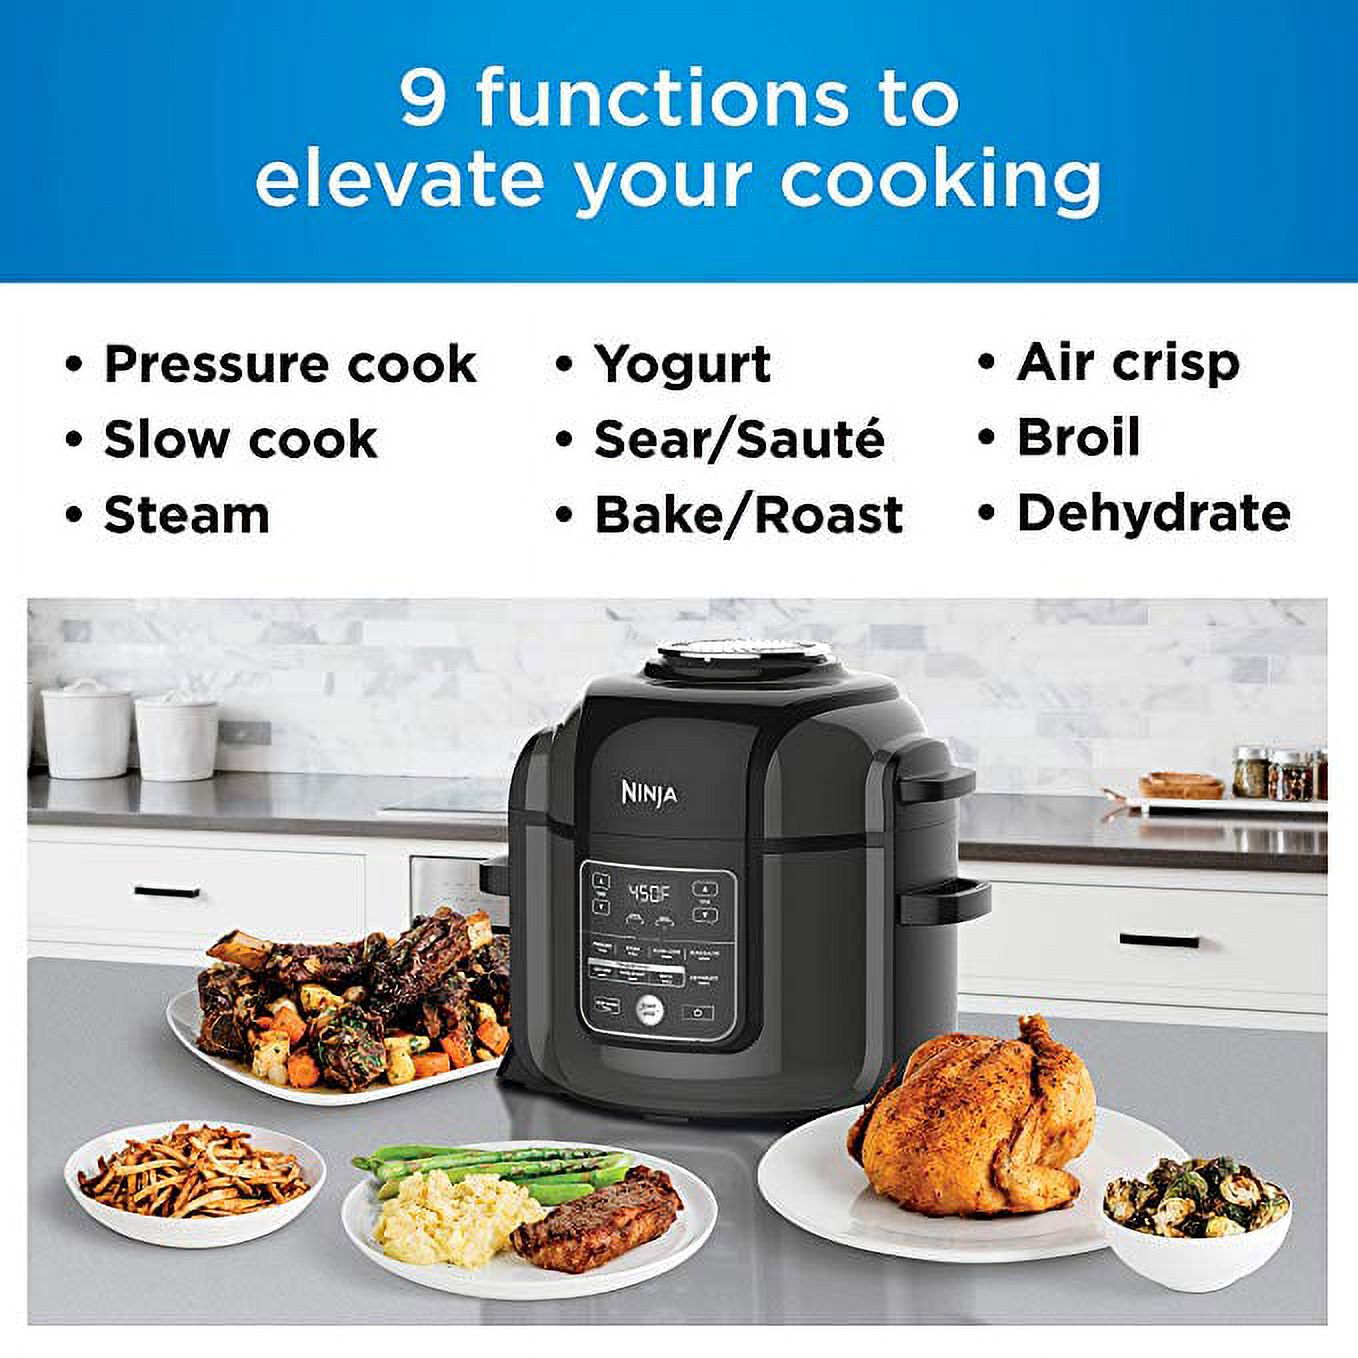 Ninja® Foodi™ TenderCrisp 9-in-1 8-Quart XL Pressure Cooker, Black OP401 - image 3 of 15